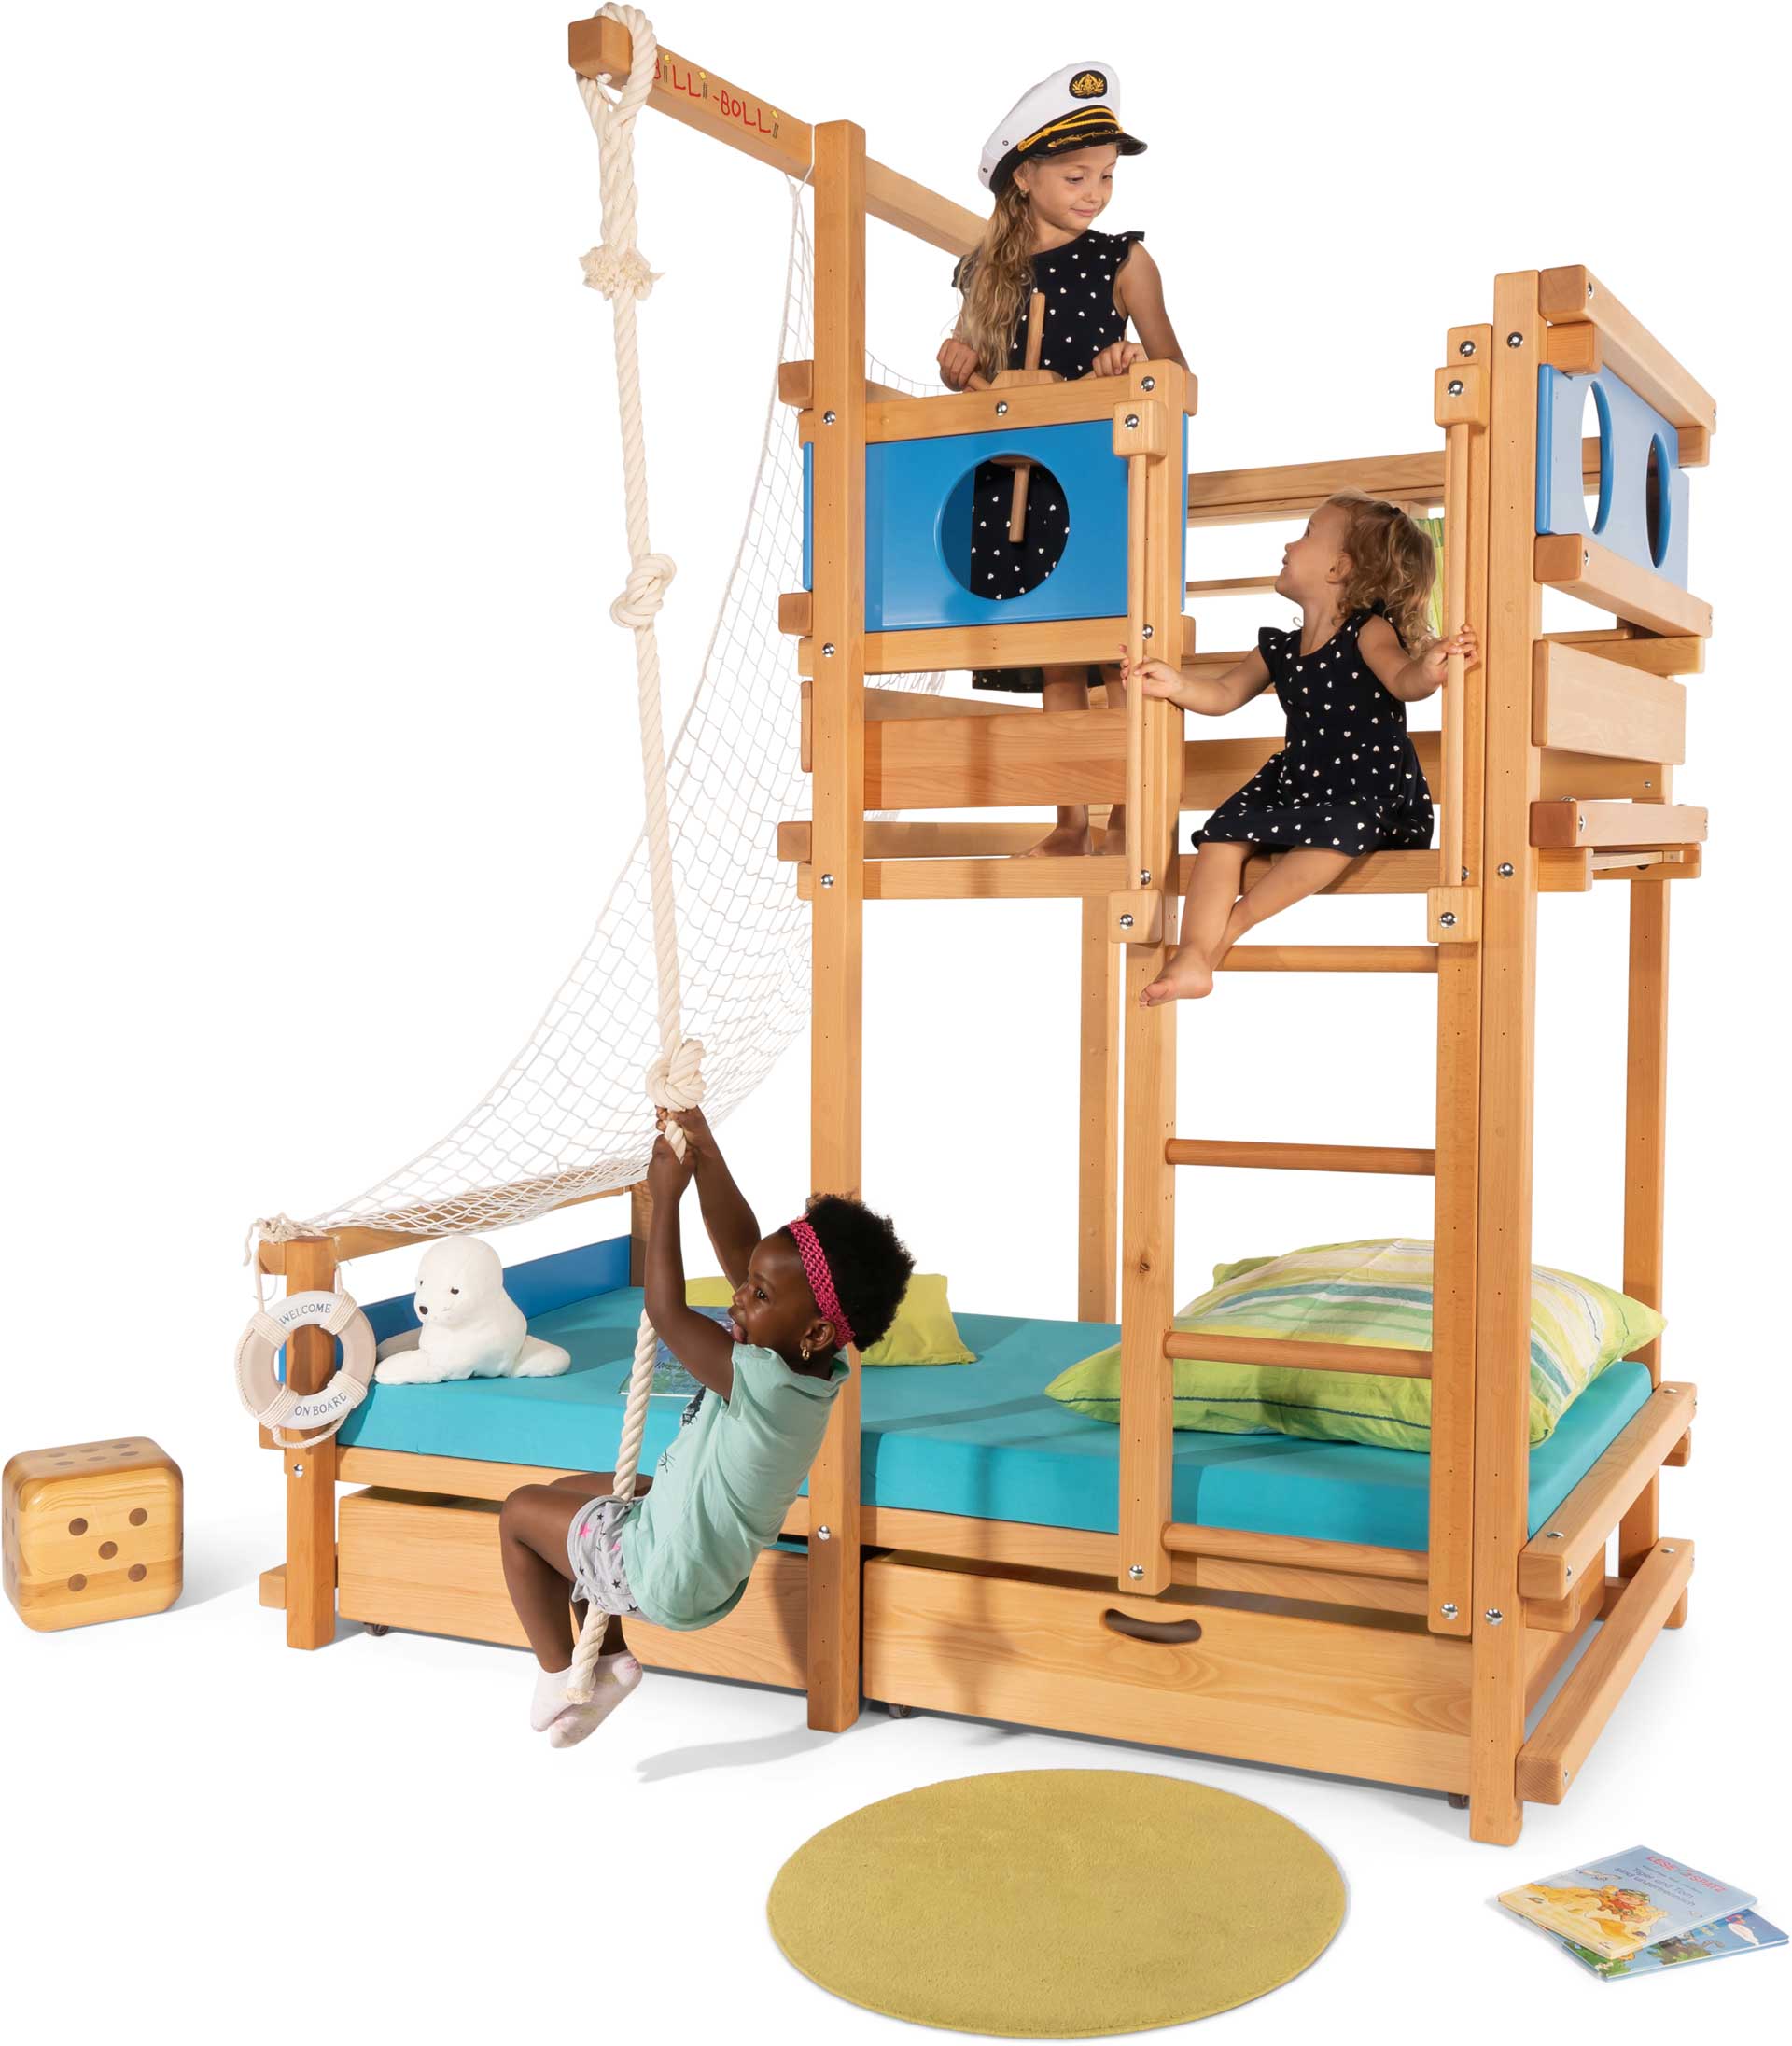 Dachschrägen­bett: Das geniale Kinder-Spielbett für die Dachschräge (Spielbetten)